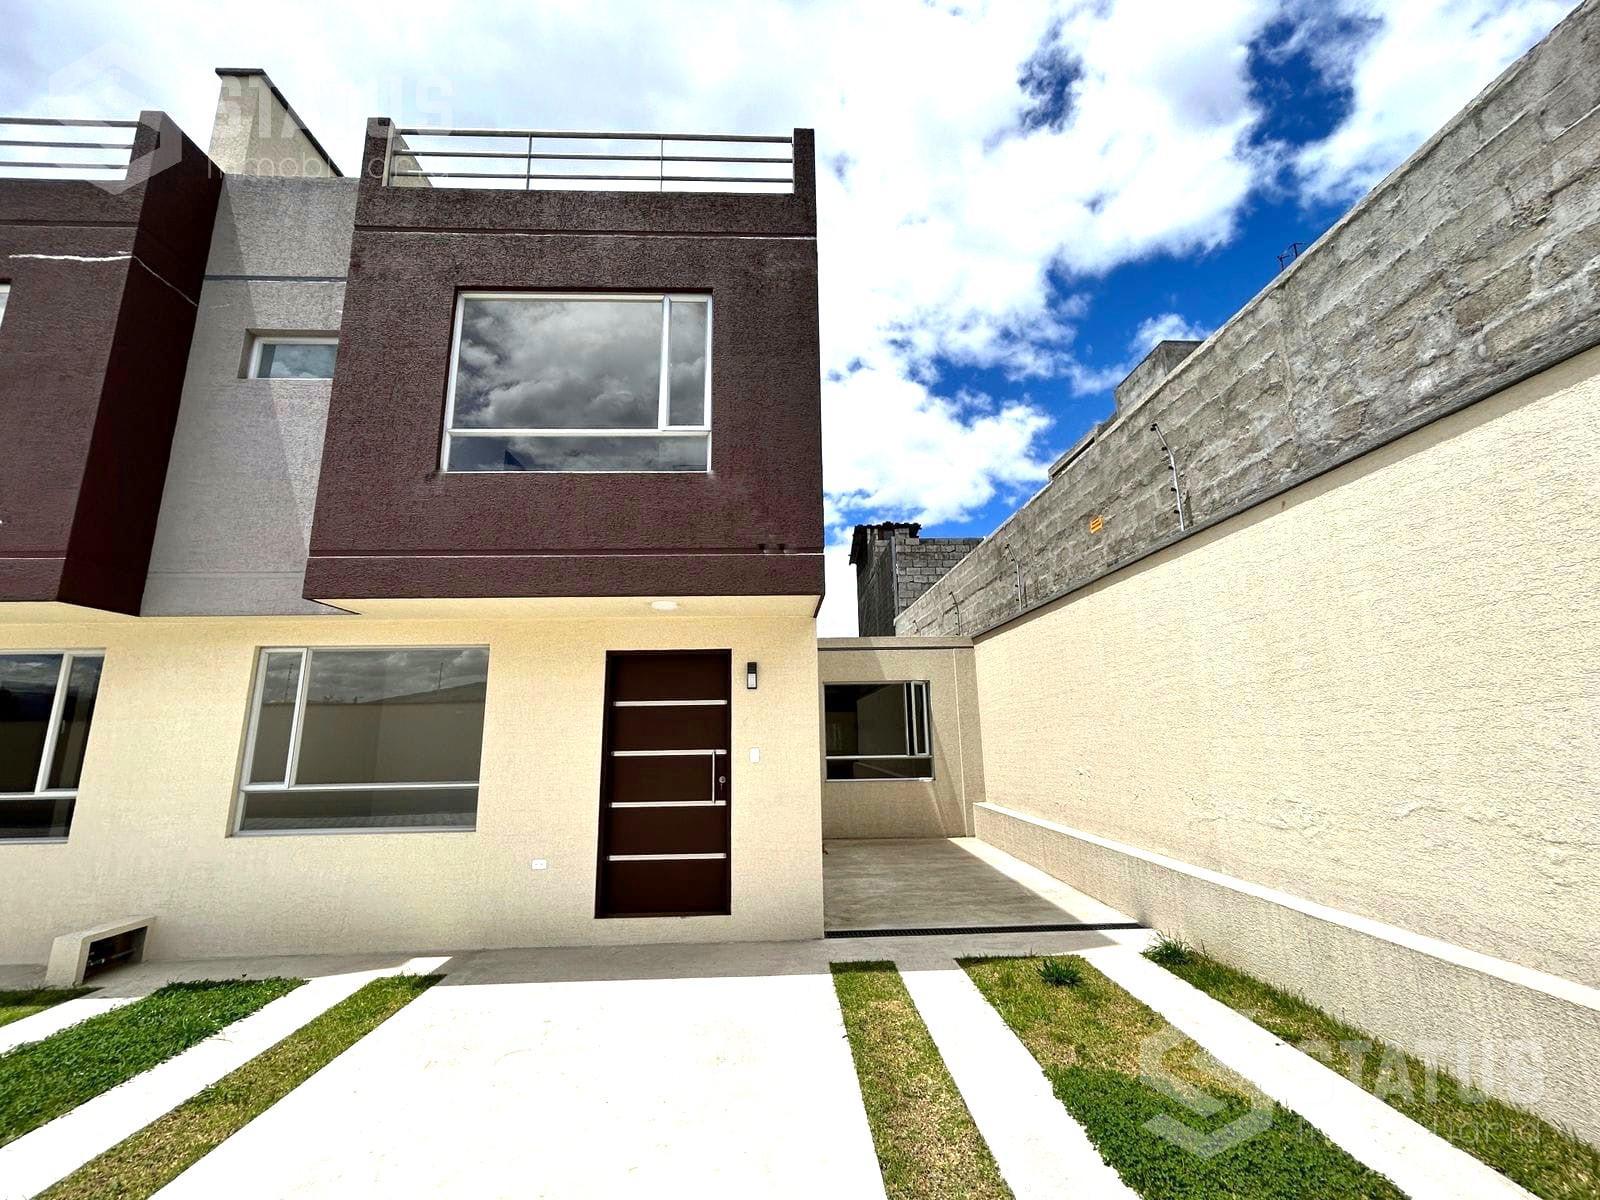 Vendo casa con terraza, 3 Dorm., ¡Aplica VIP! sector El Dean - Los Chillos desde $105.000